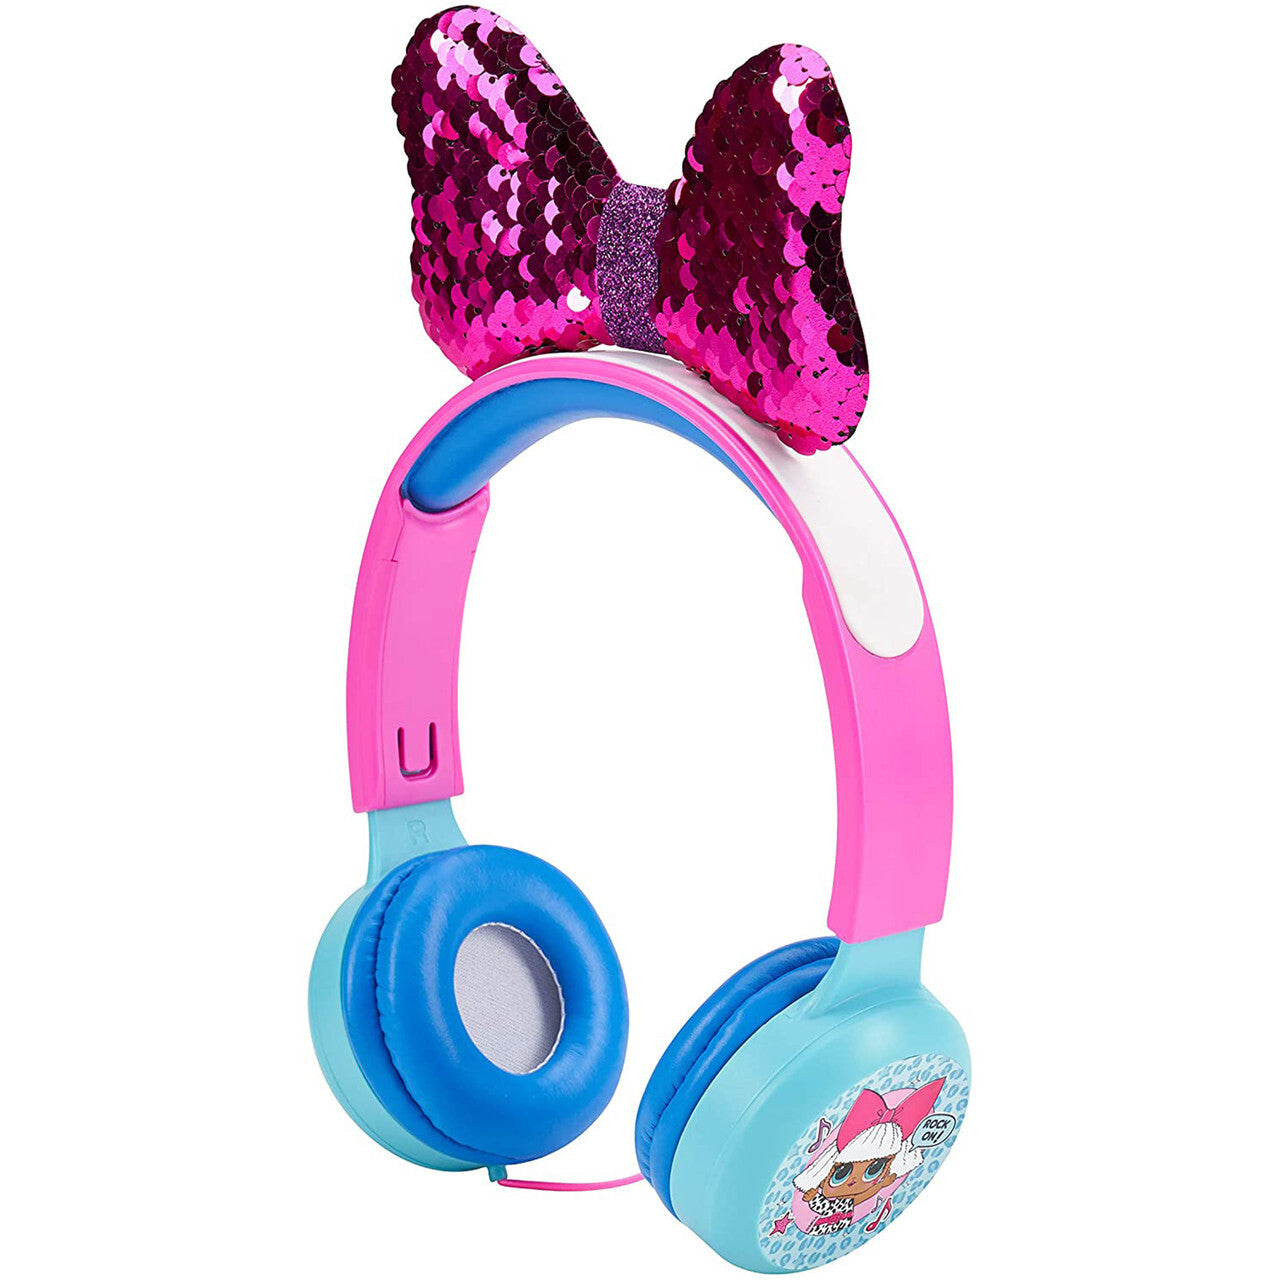 L.O.L. Surprise! Kid-safe Diva Headphones In Pink And Blue